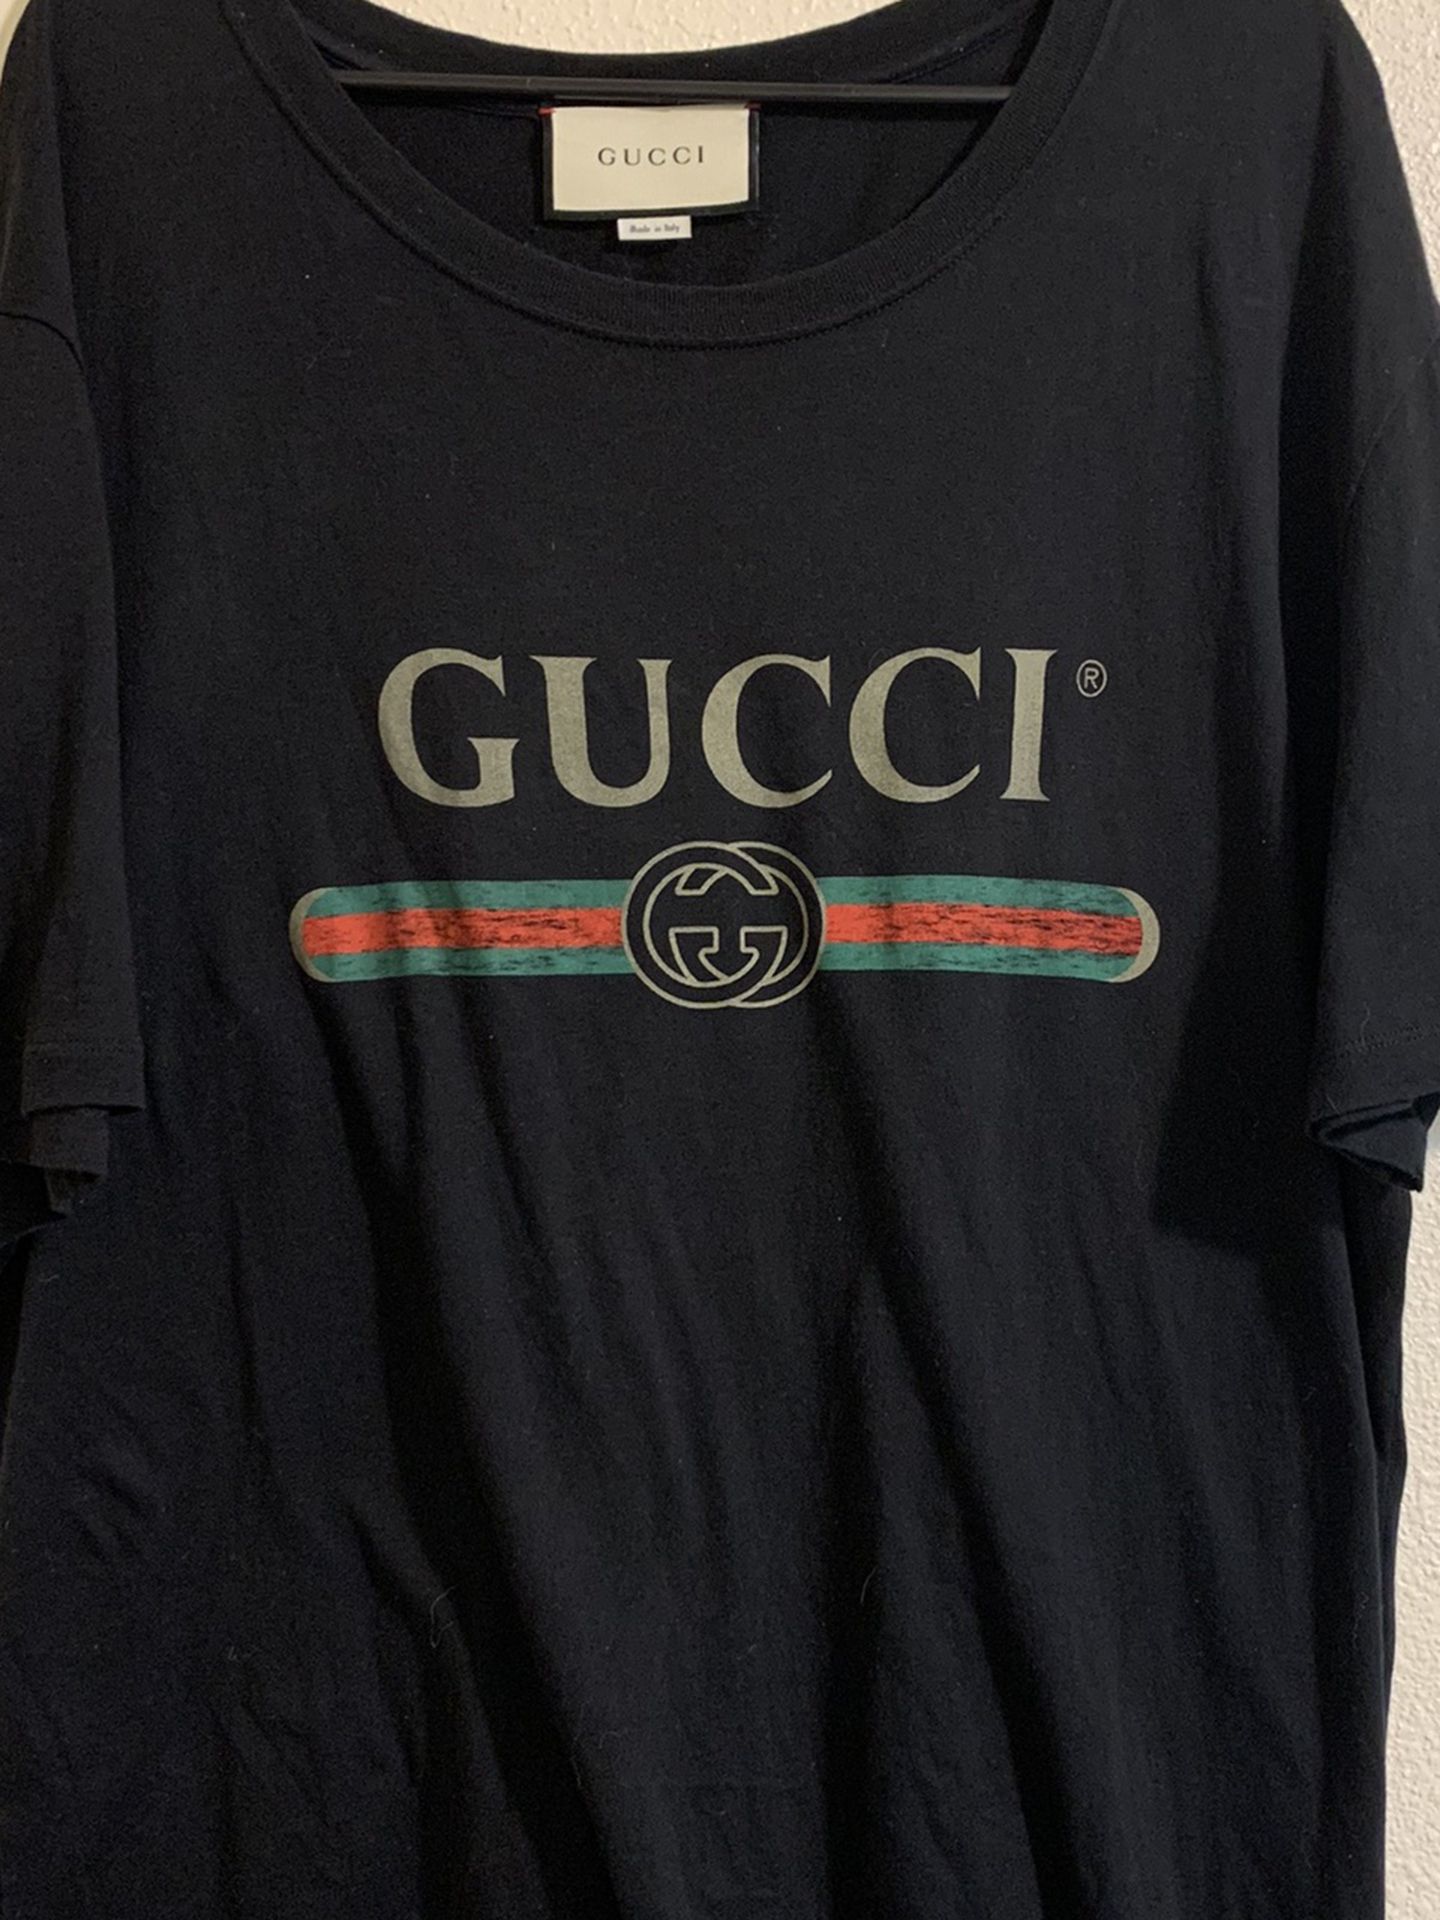 Men’s Gucci shirt